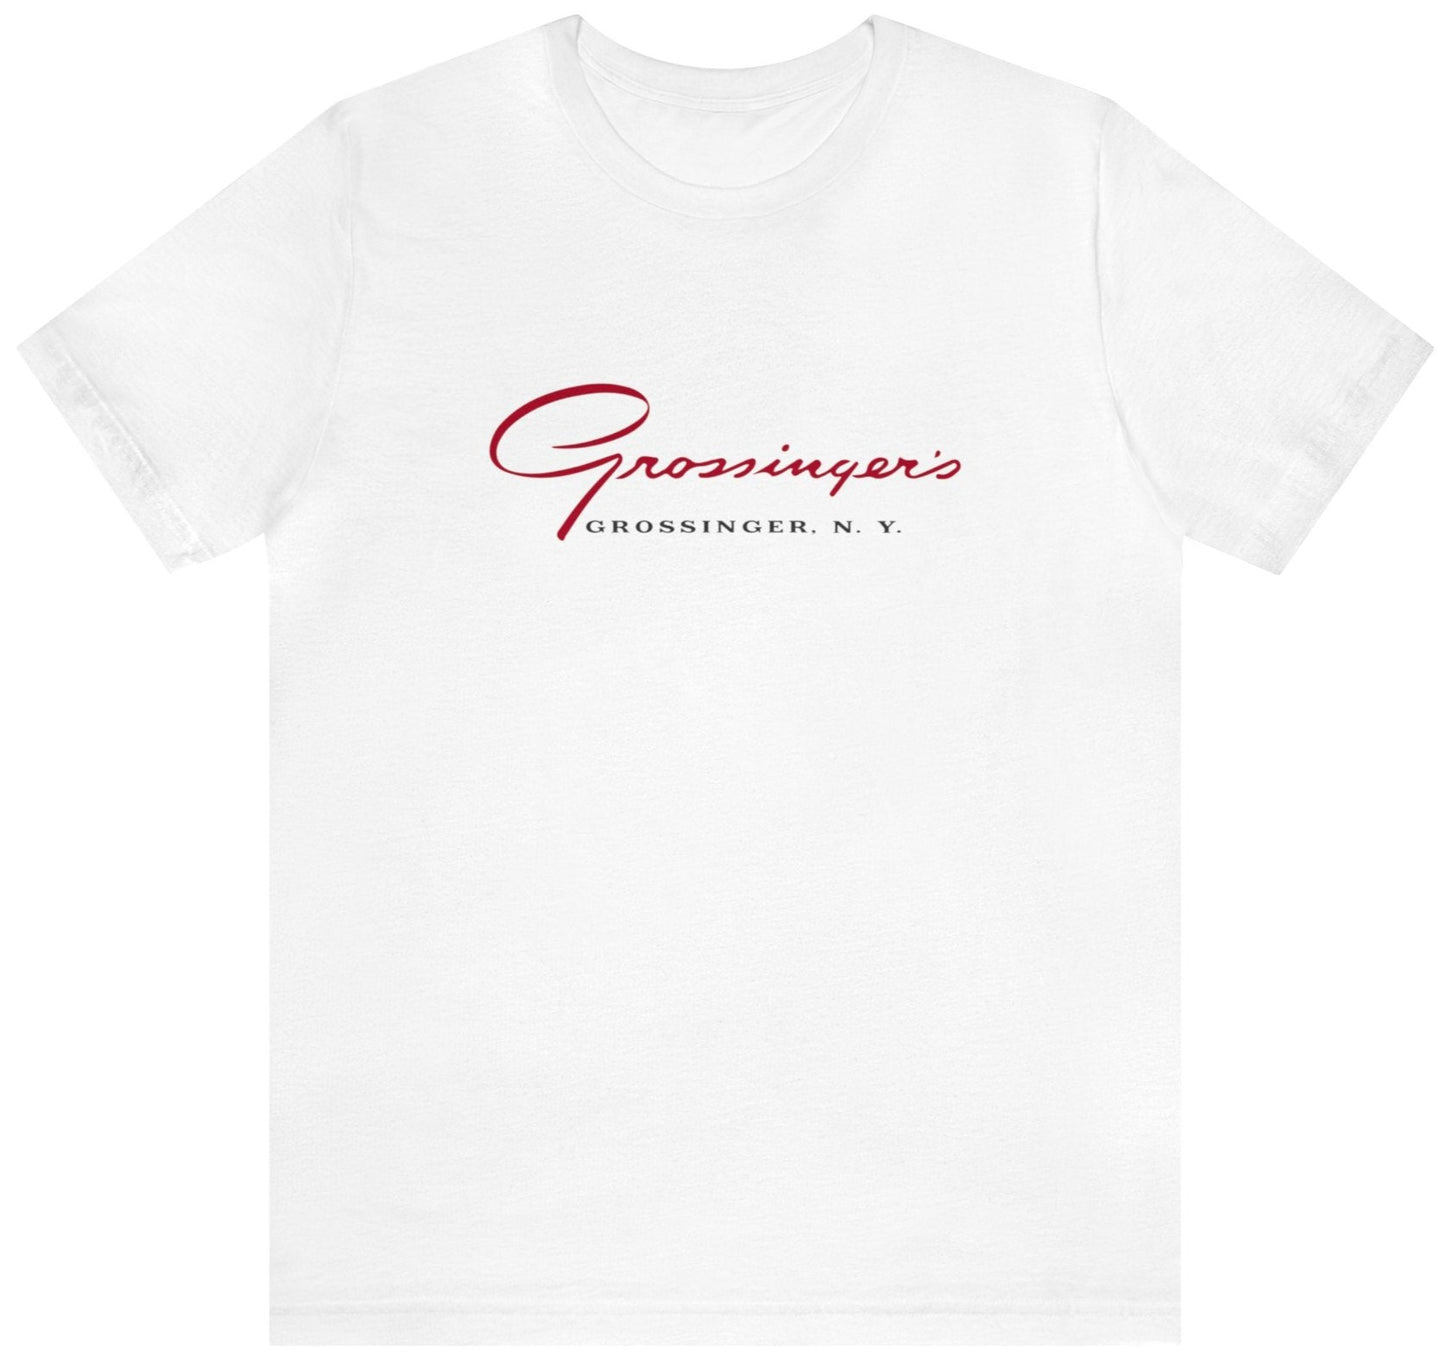 Grossinger's t-shirt